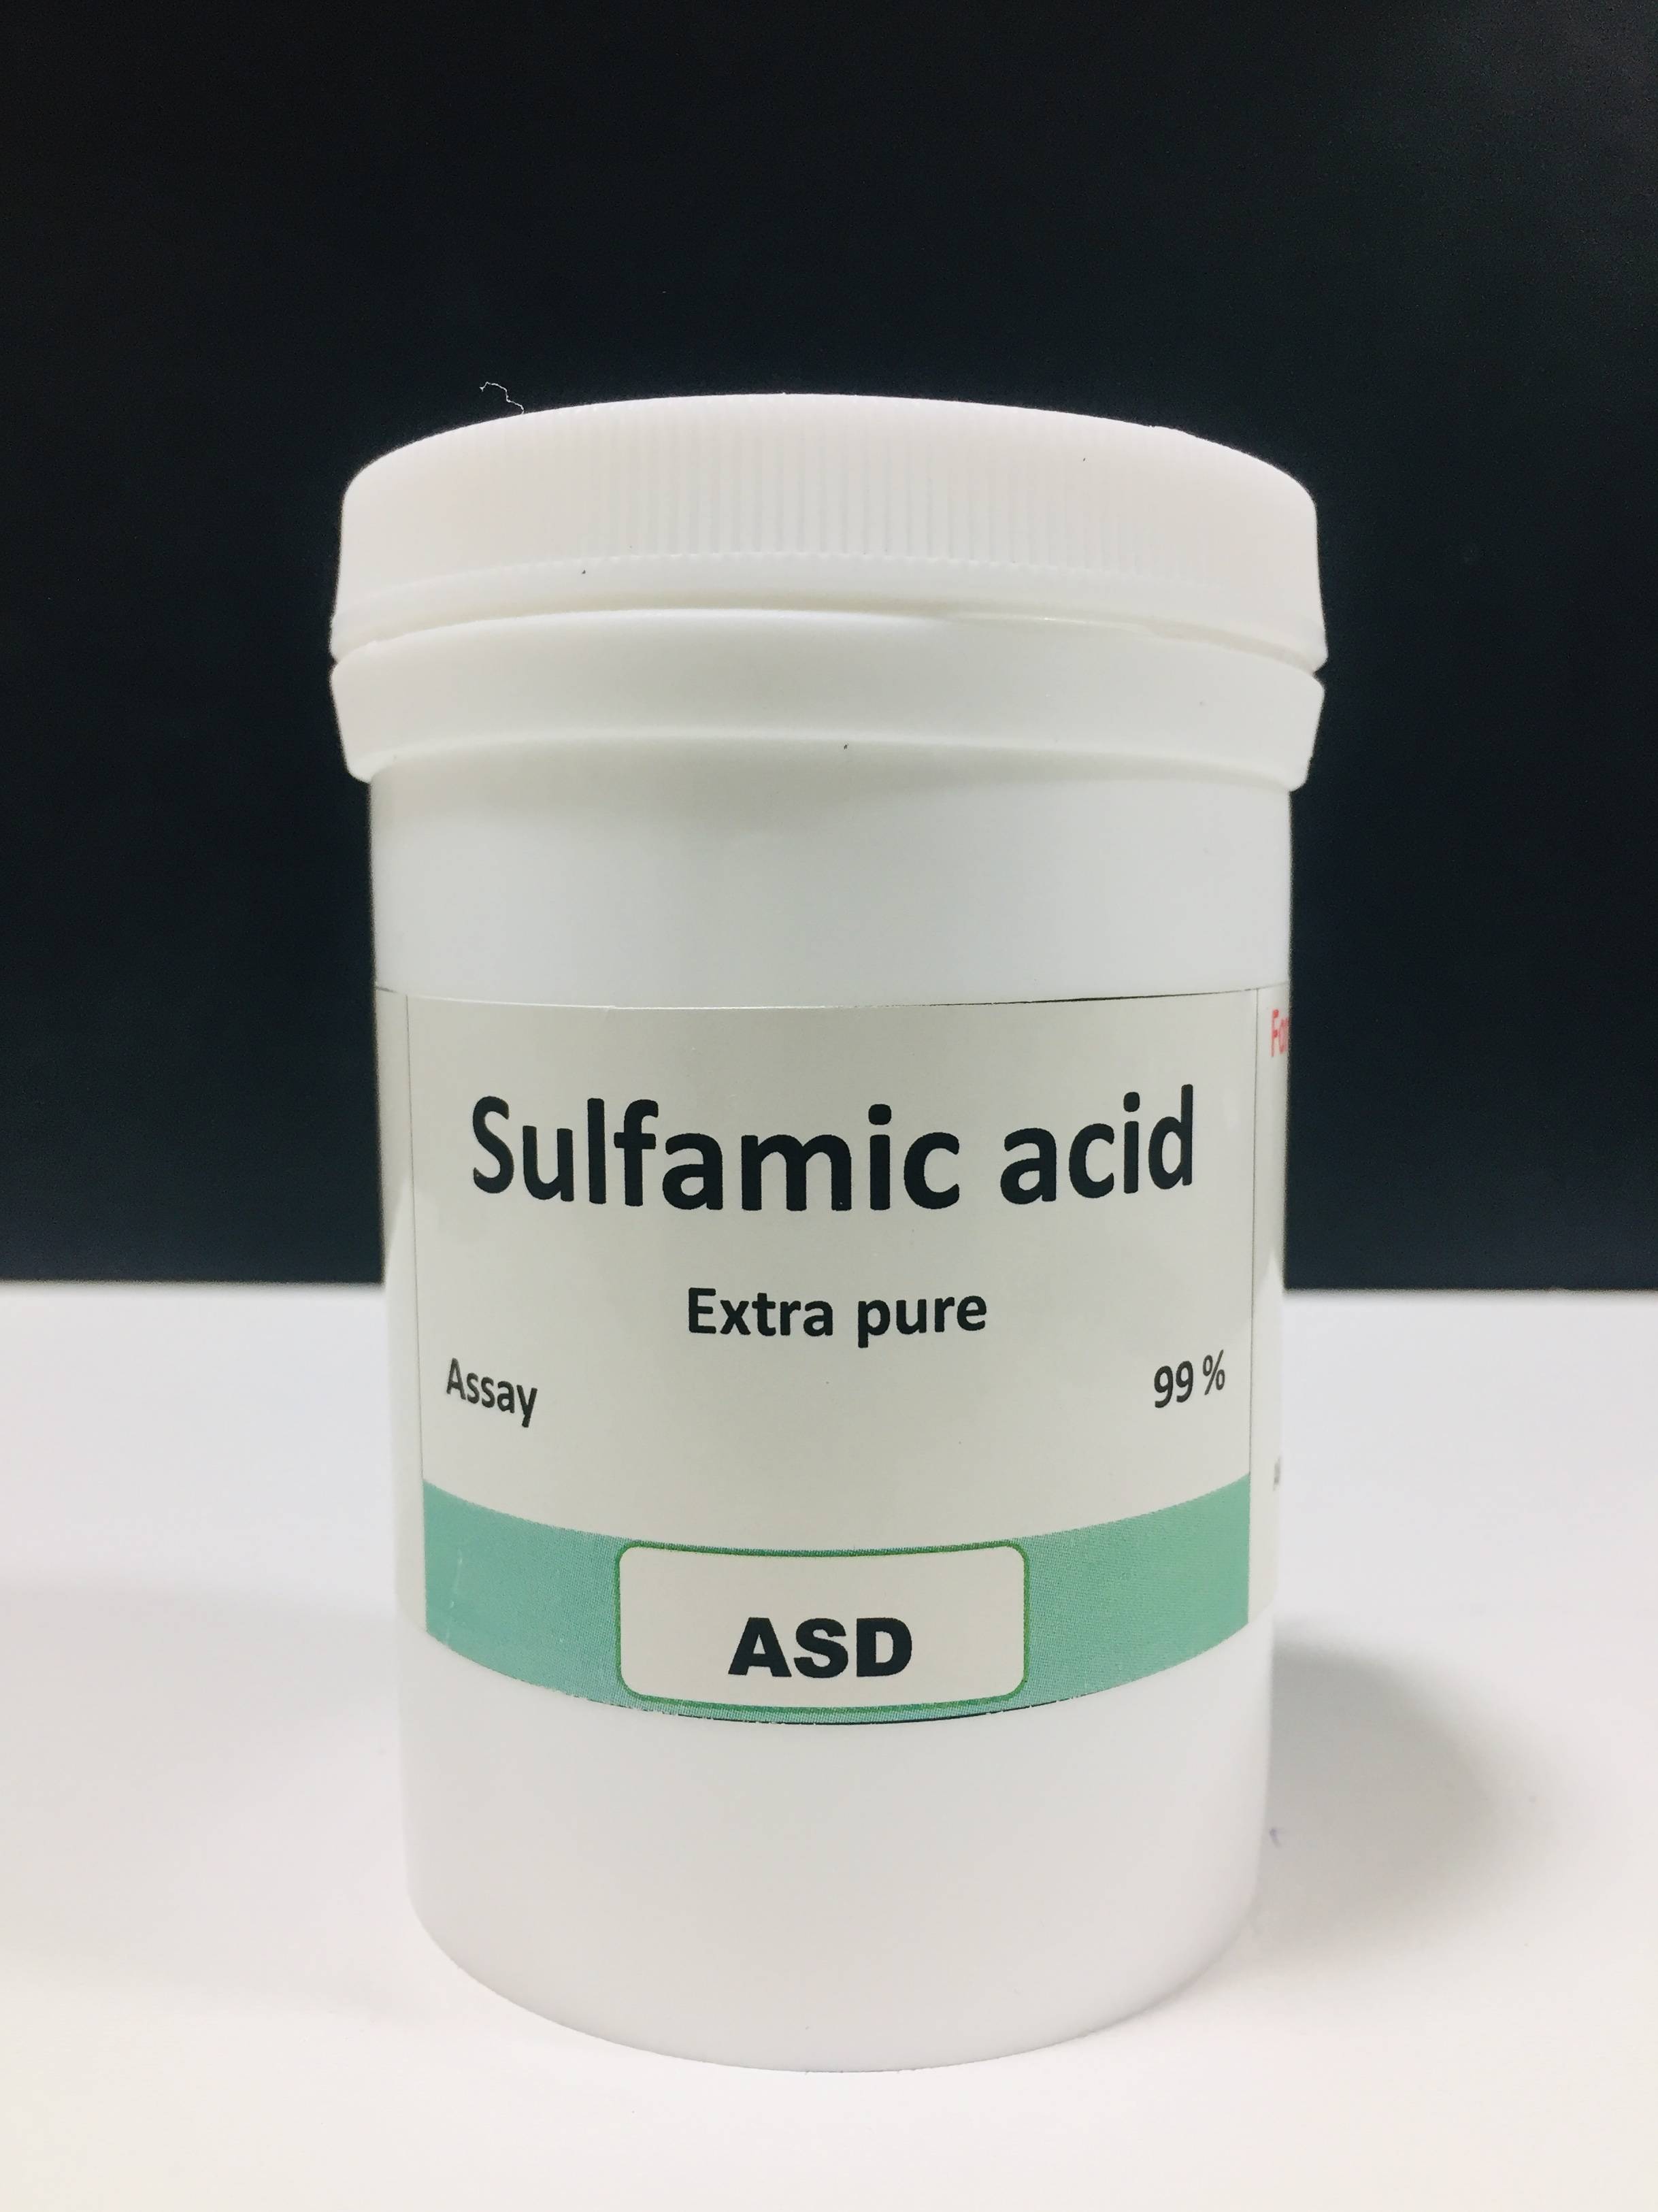 سولفامیک اسید 100 گرم ASD